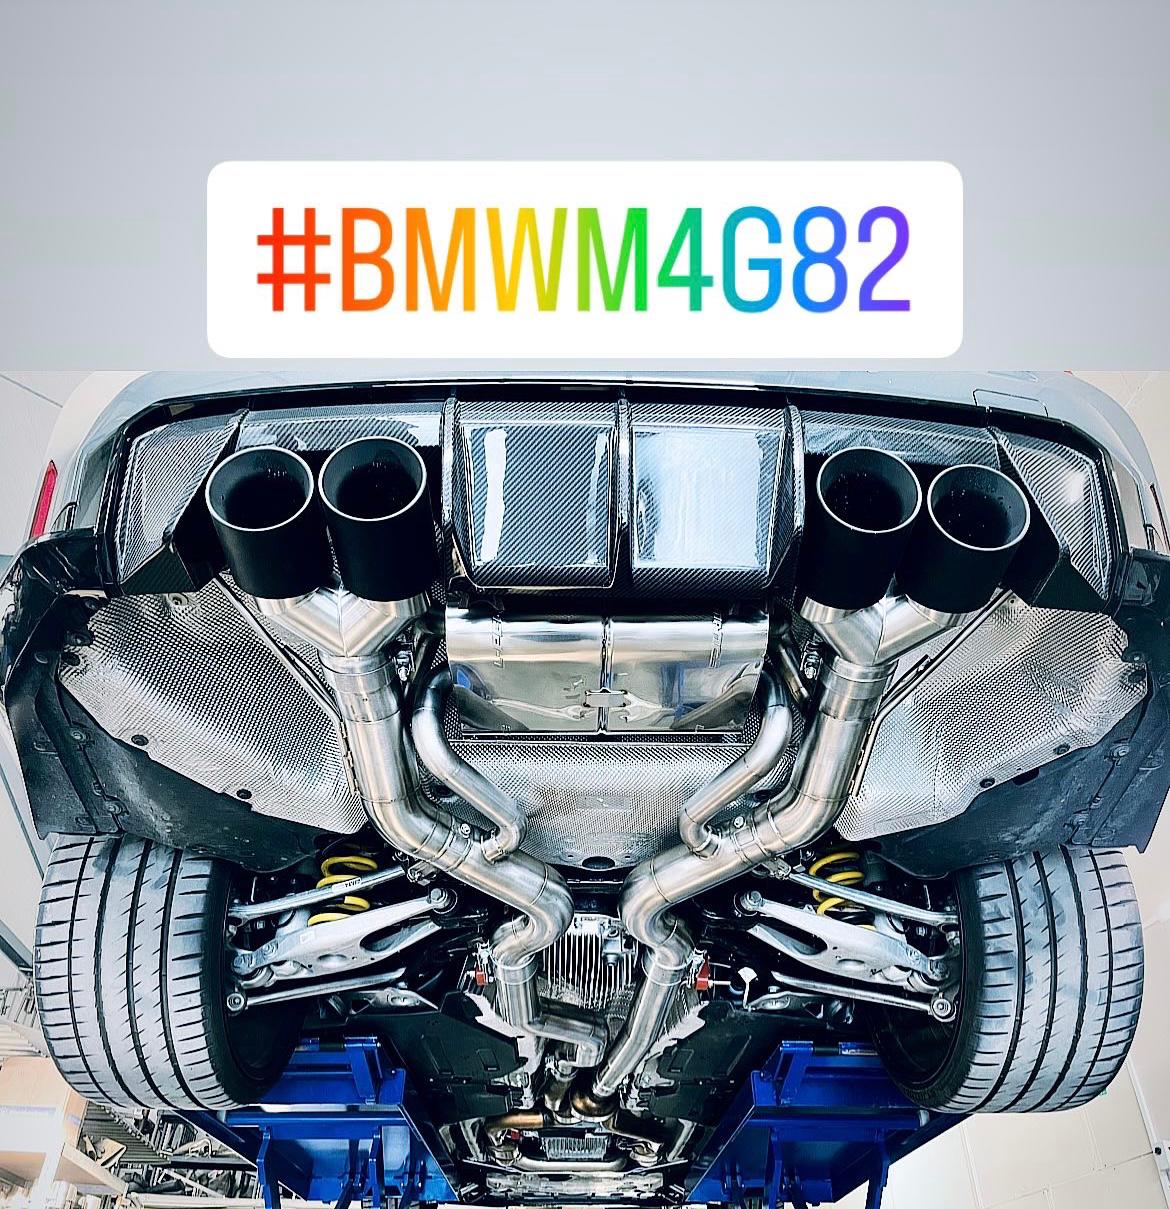 L-Performance - BMW M3 G80 + G81 Touring / M4 G82 + Competition. 2x 3,5Zoll / S58 bis 510PS / Xtreme - Klappenauspuffanlage mit CH-Zulassung